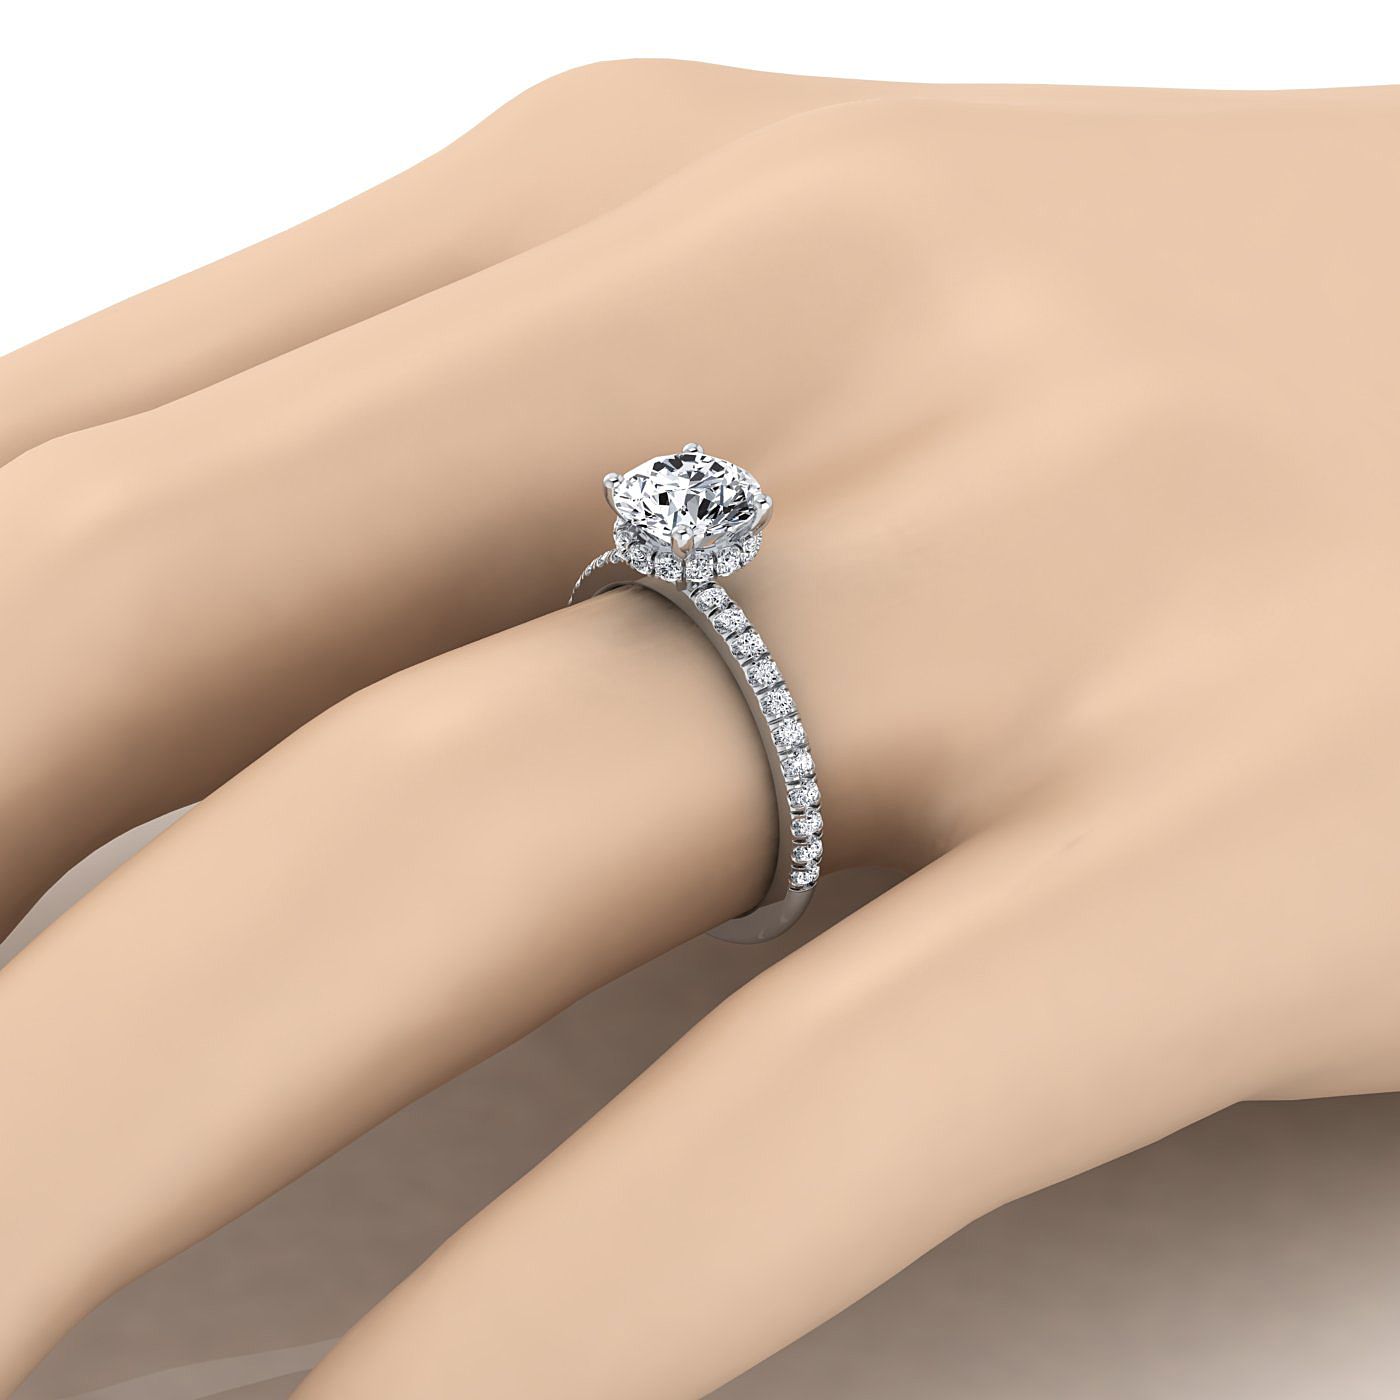 แหวนแพลทินัมทรงกลม Brilliant Garnet Secret Diamond Halo French Pave Solitaire แหวนหมั้น -1/3ctw